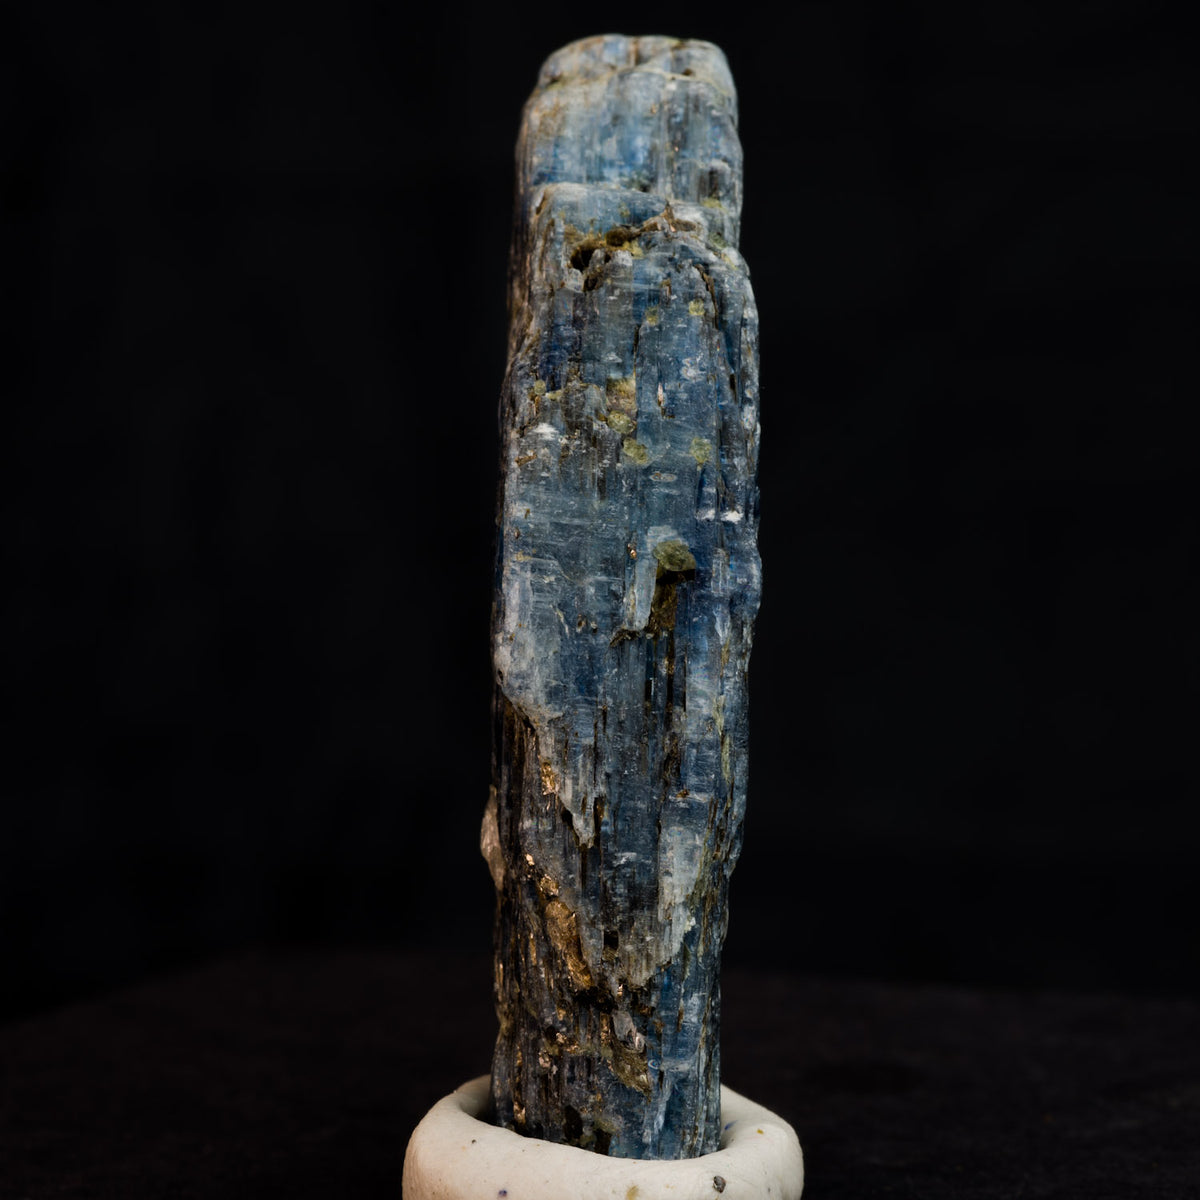 Cianita azul profundo 19 g - 53 x 11 x 10 mm